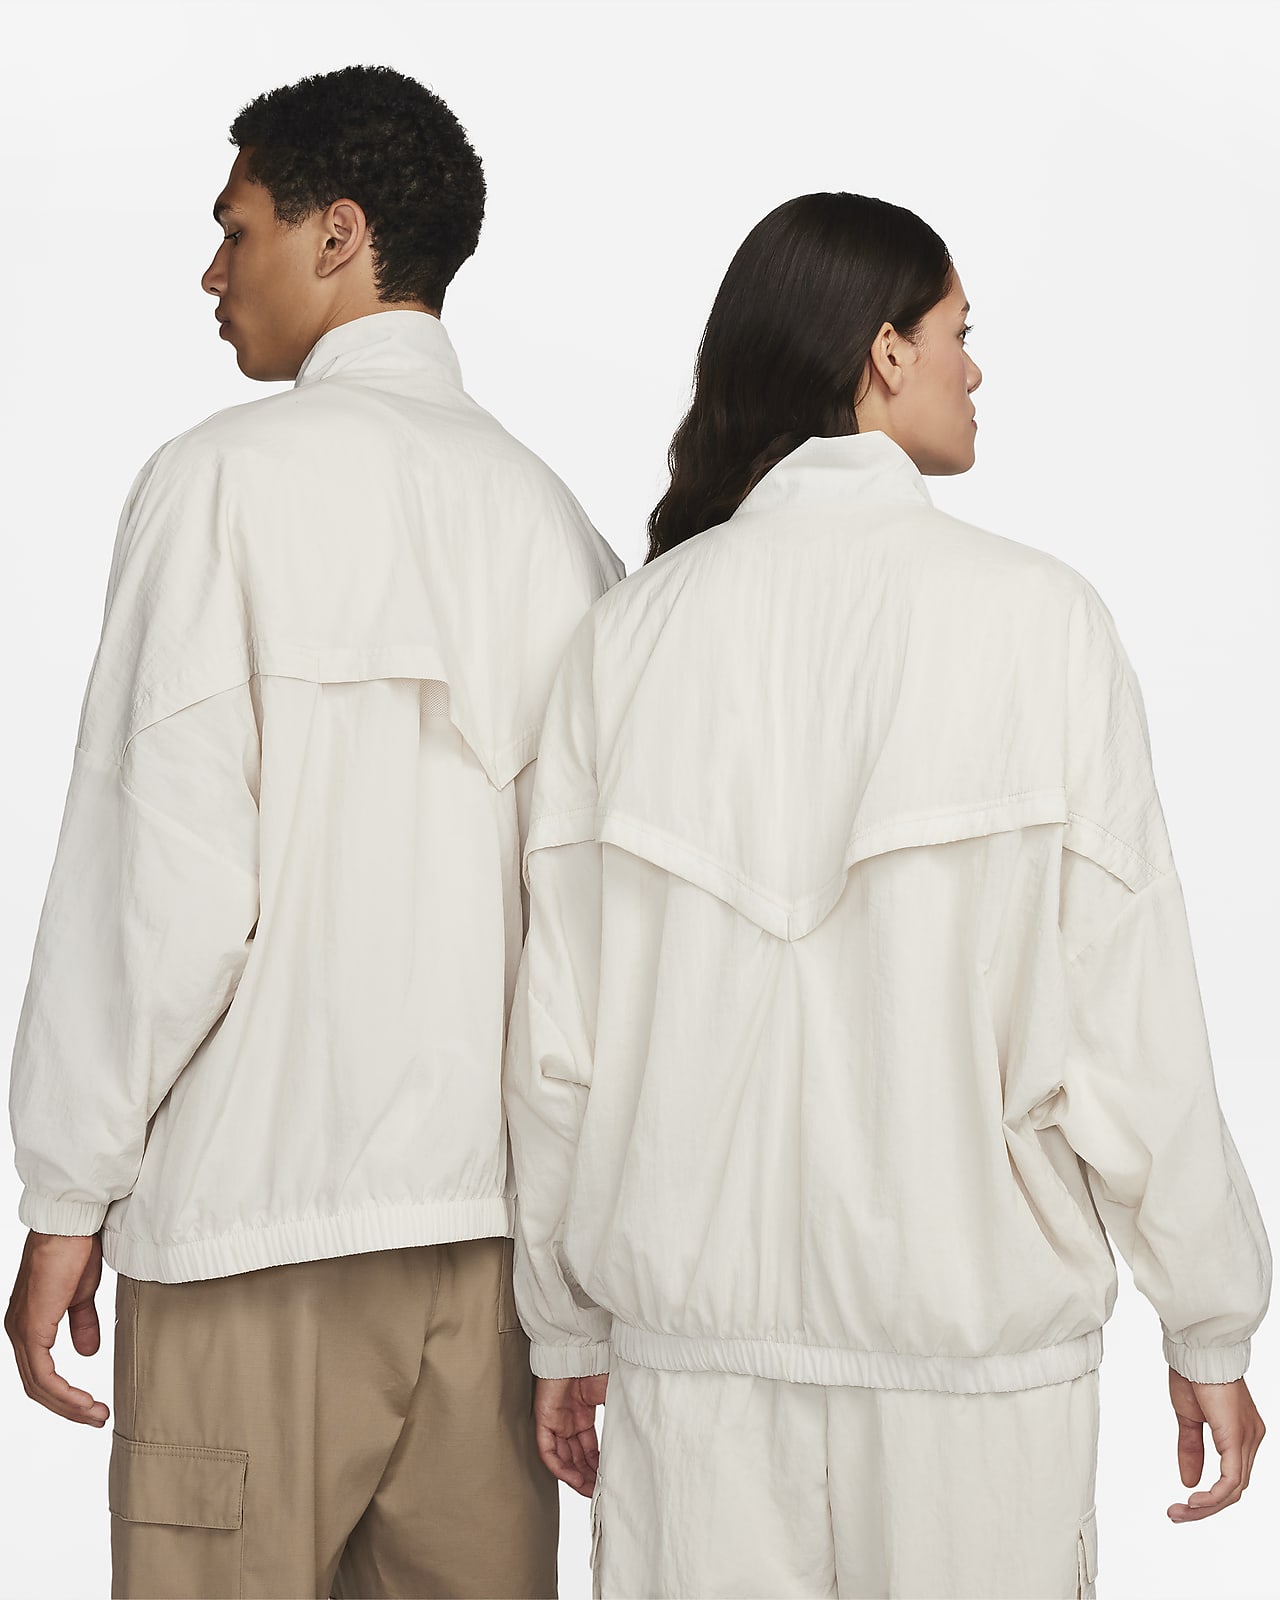 Nike Sportswear Essential Women's Woven Fleece-Lined Jacket. Nike NO